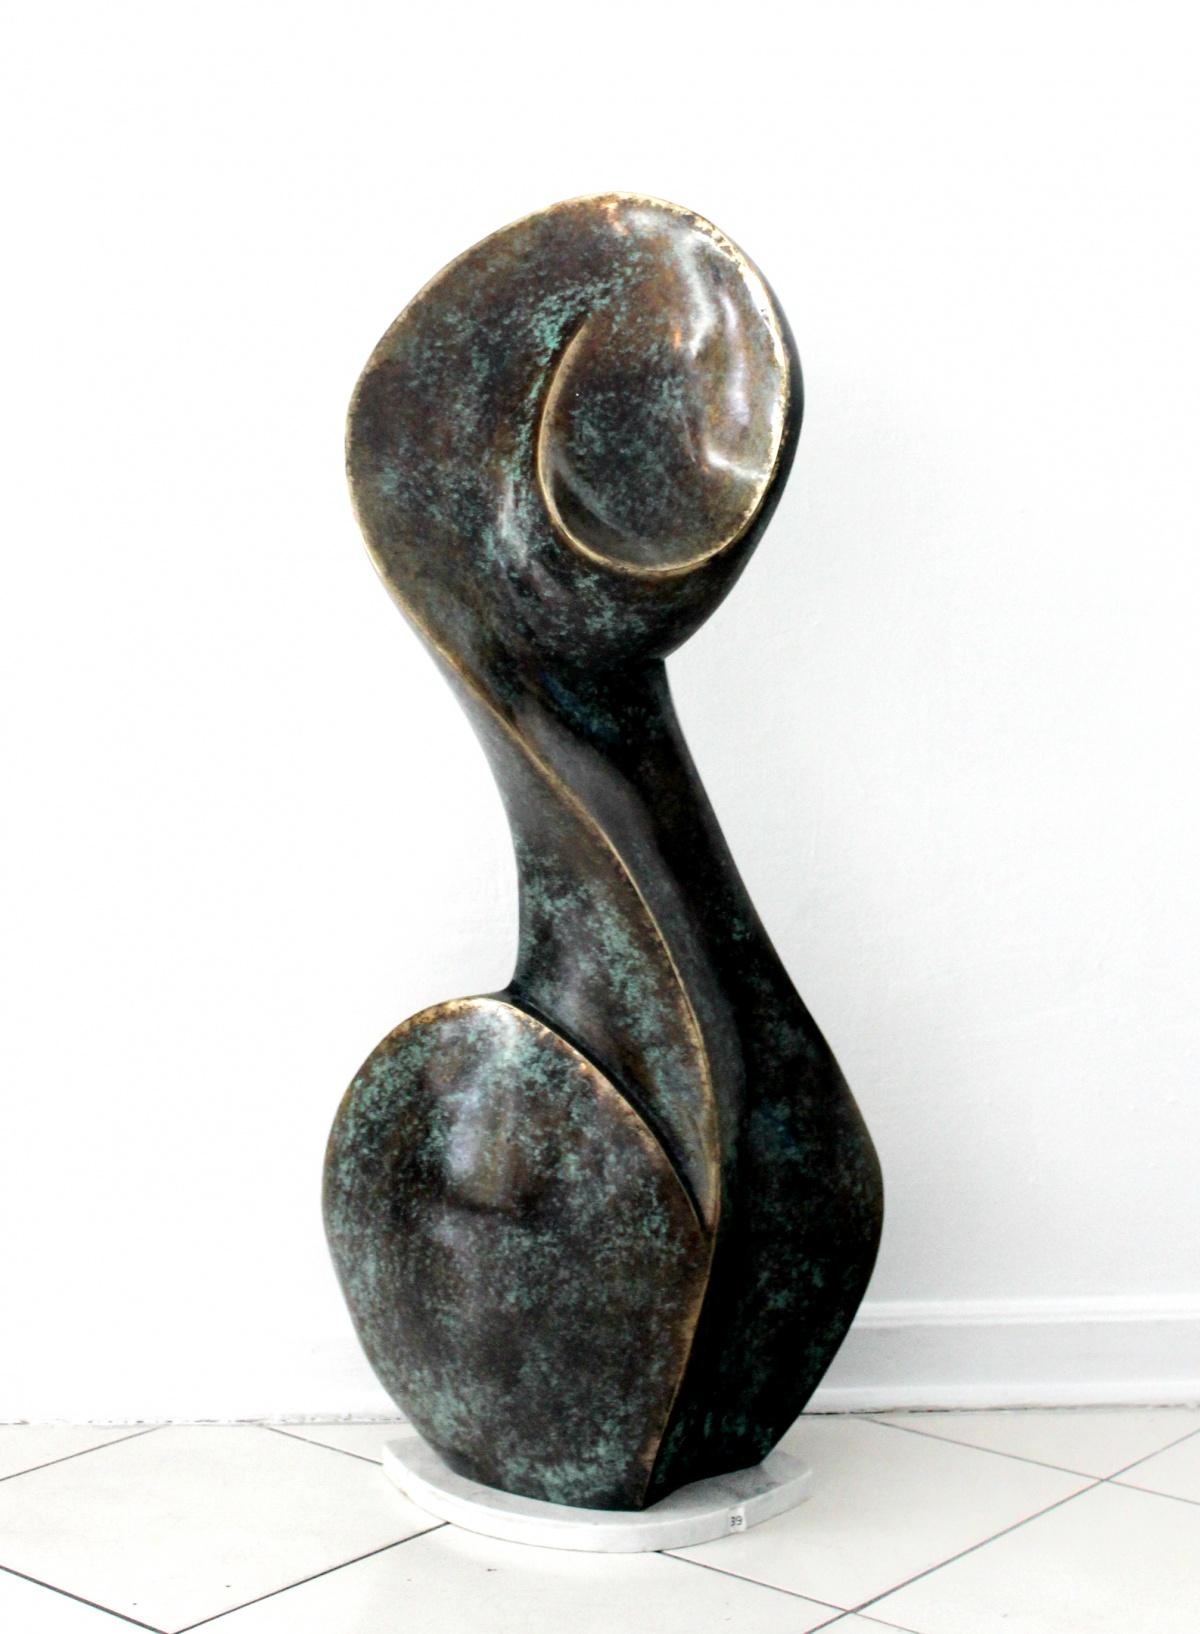 Stanisław Wysocki Nude Sculpture - A muse - Contemporary Bronze Sculpture, Abstract, Figurative, Nude